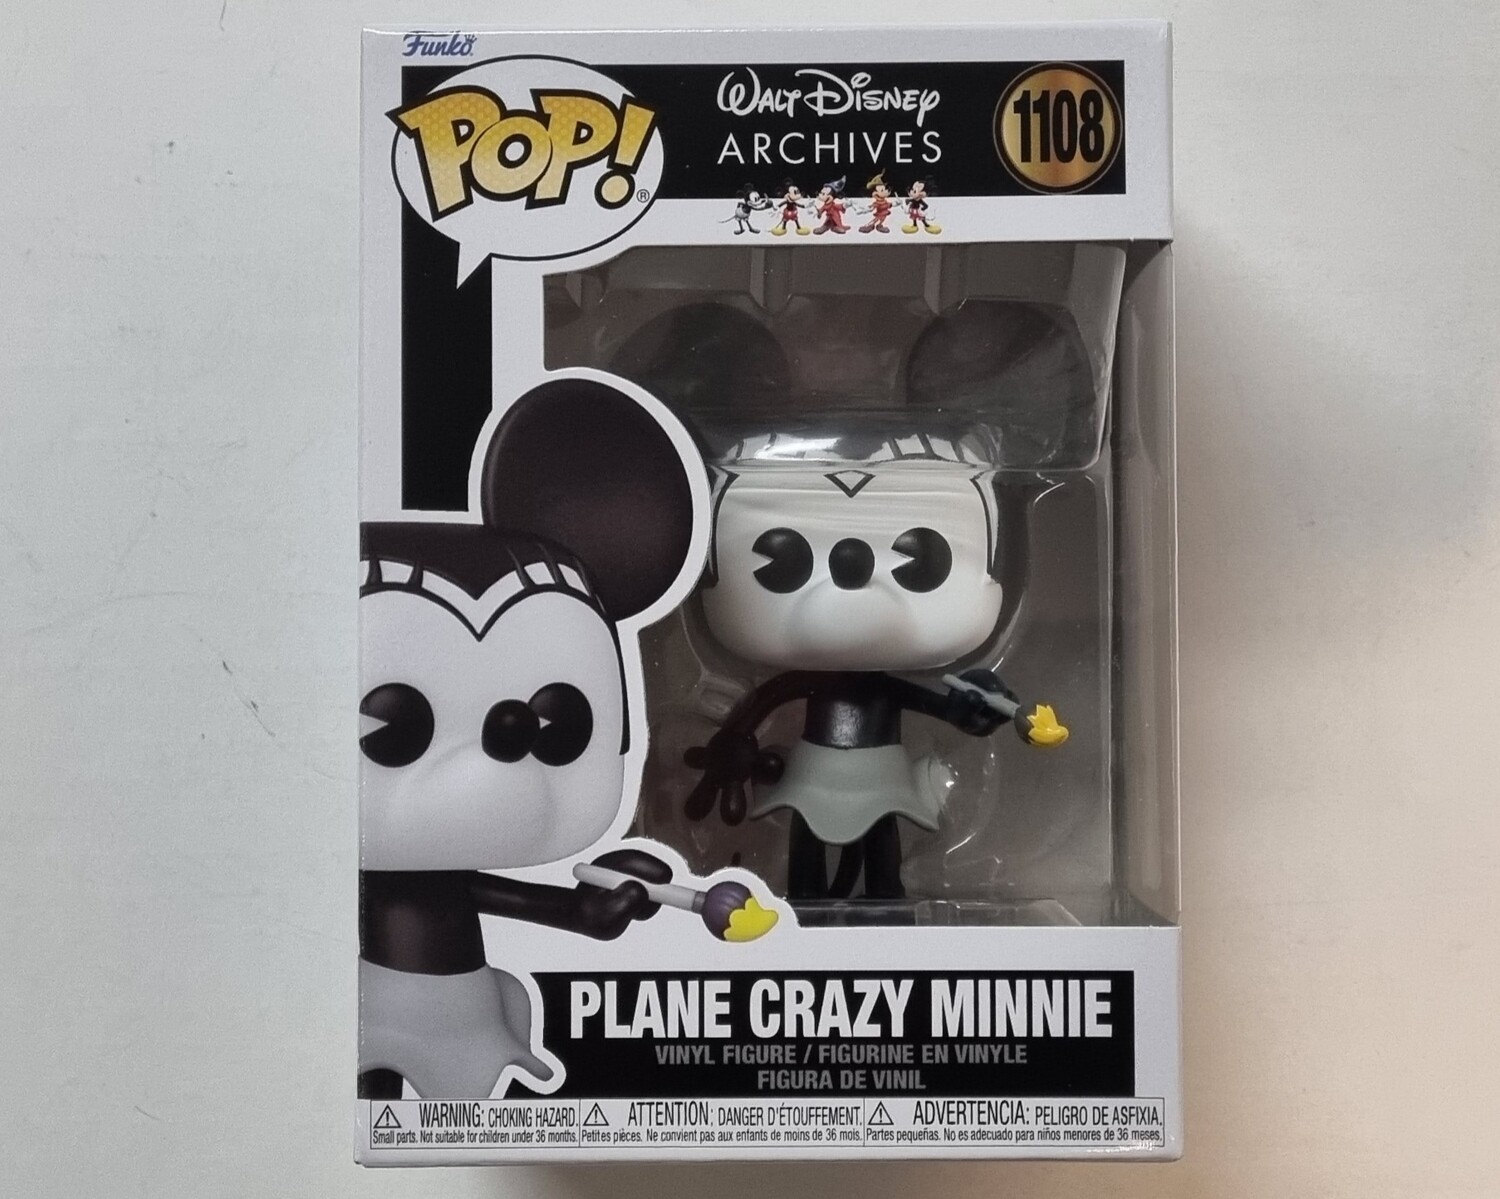 Funko Pop!, Plane Crazy Minnie, #1108, Disney, Walt Disney Archives